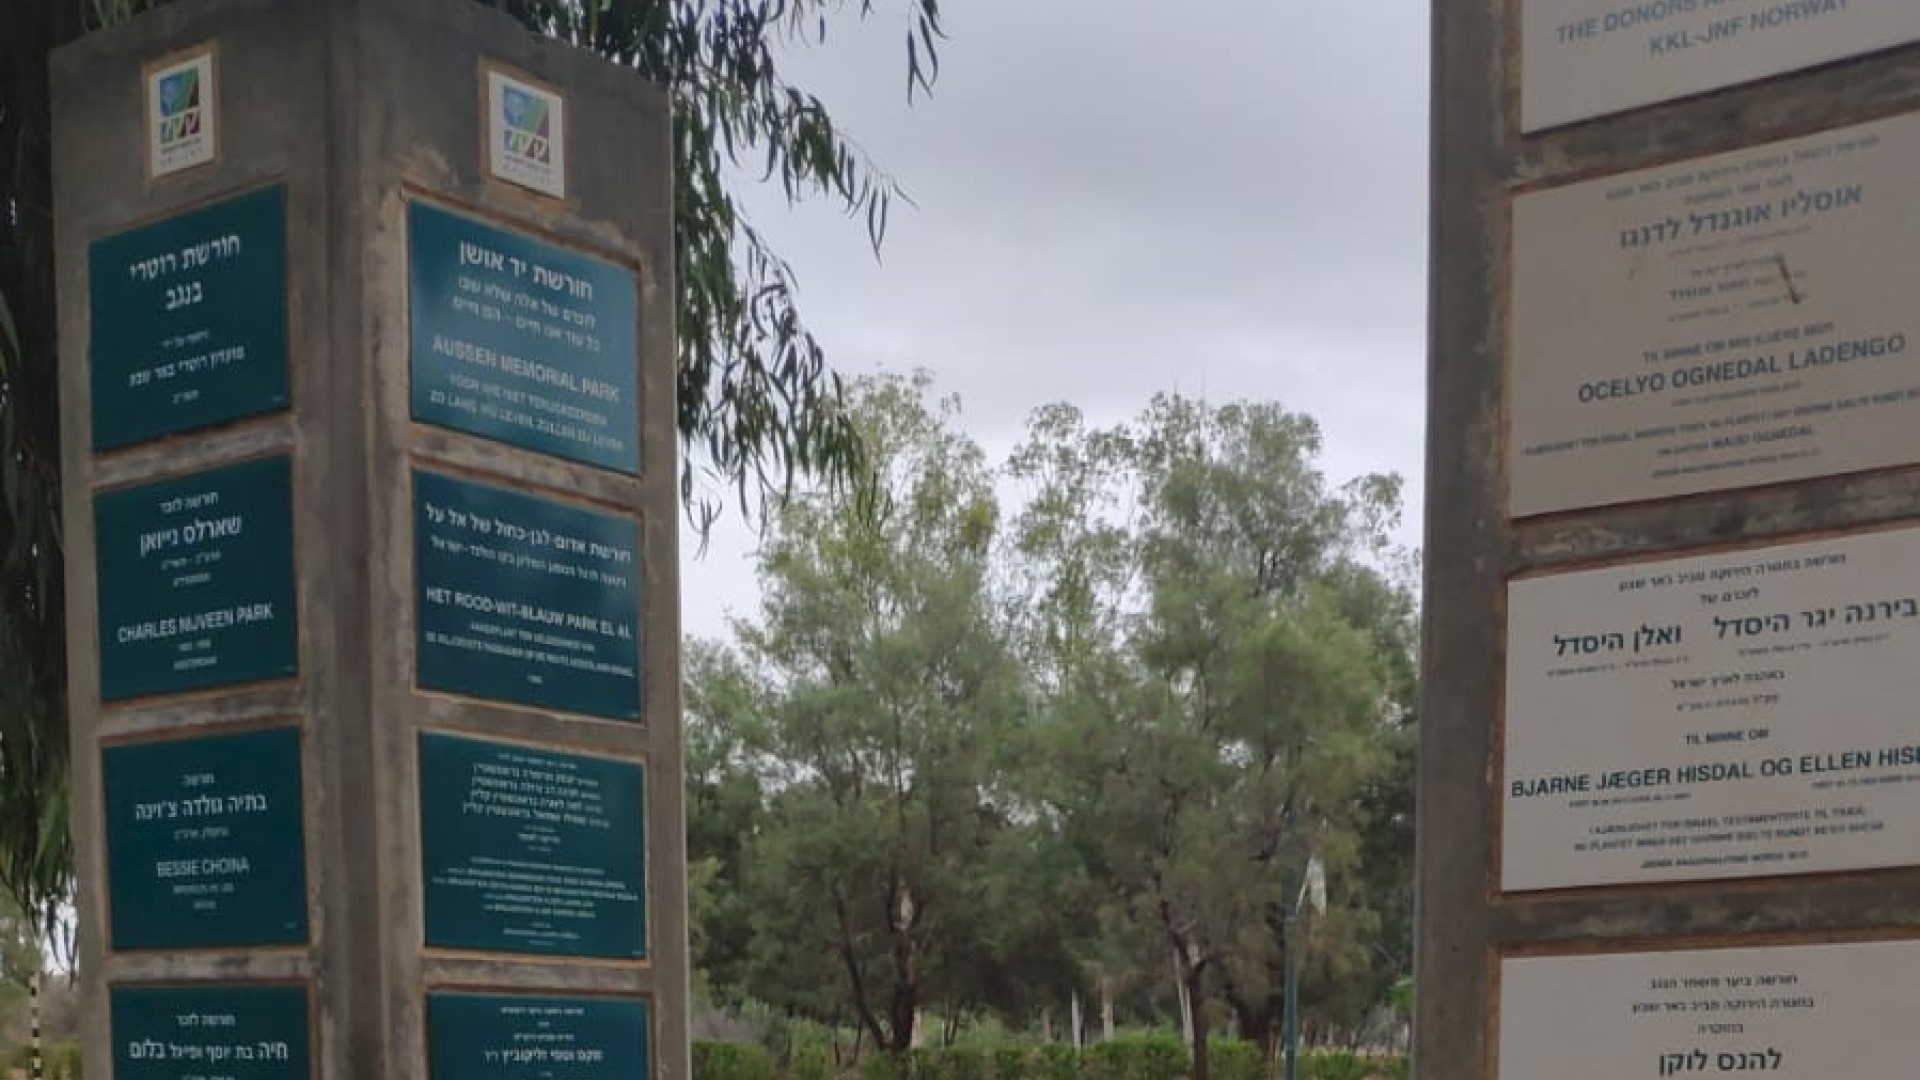 Aussen memorial park; Een herinnering voor altijd